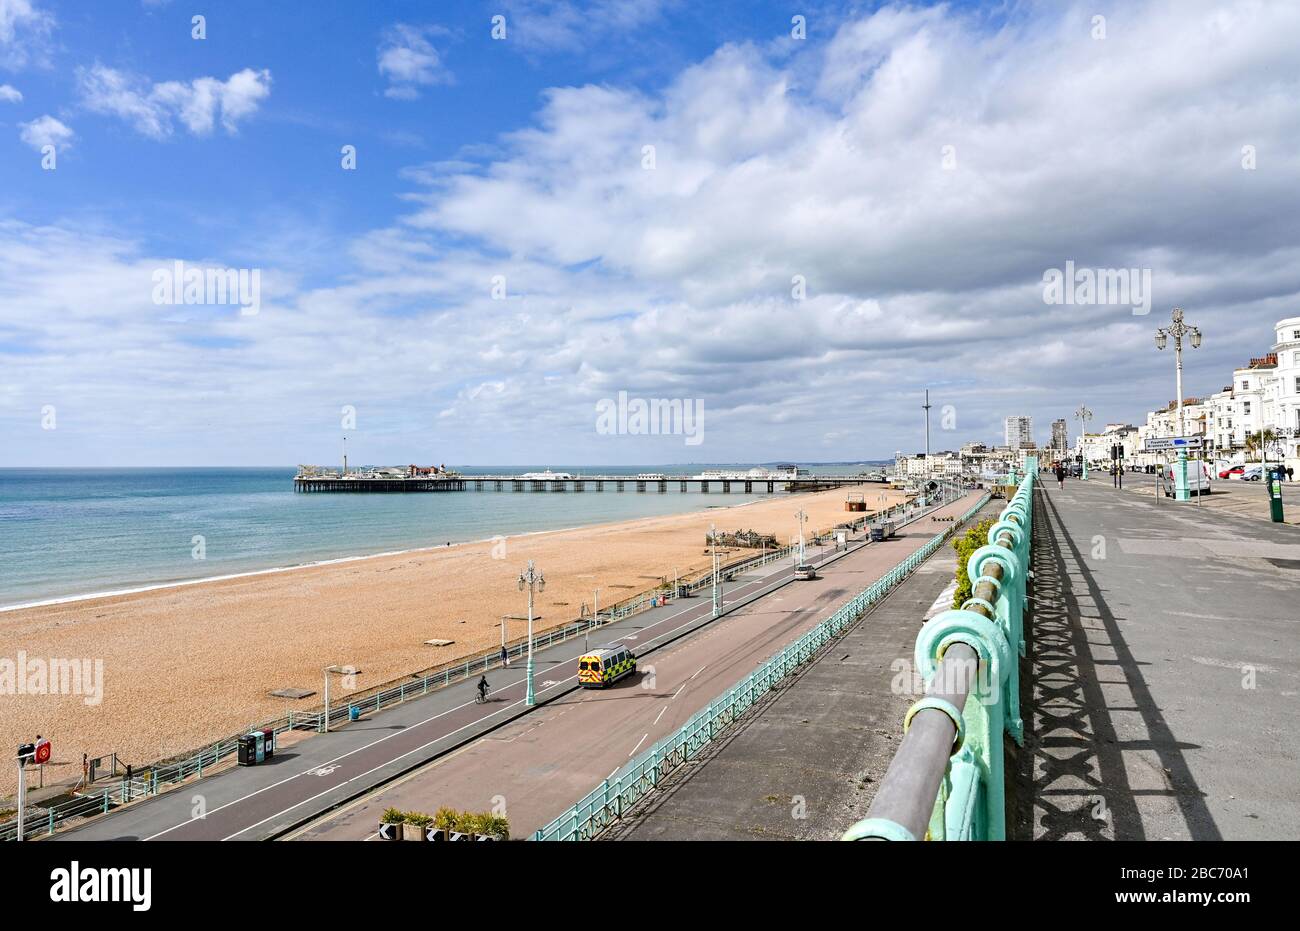 Brighton UK 3. April 2020 - Strand von Brighton und Meer am Tag elf der Regierungen, die sich während der Coronavirus COVID-19-Pandemie-Krise in Großbritannien absetzen. Es wird erwartet, dass sich das Wetter über das Wochenende aufwärmen wird und die Temperaturen am Sonntag voraussichtlich zwanzig Grad erreichen werden. Kredit: Simon Dack / Alamy Live News Stockfoto